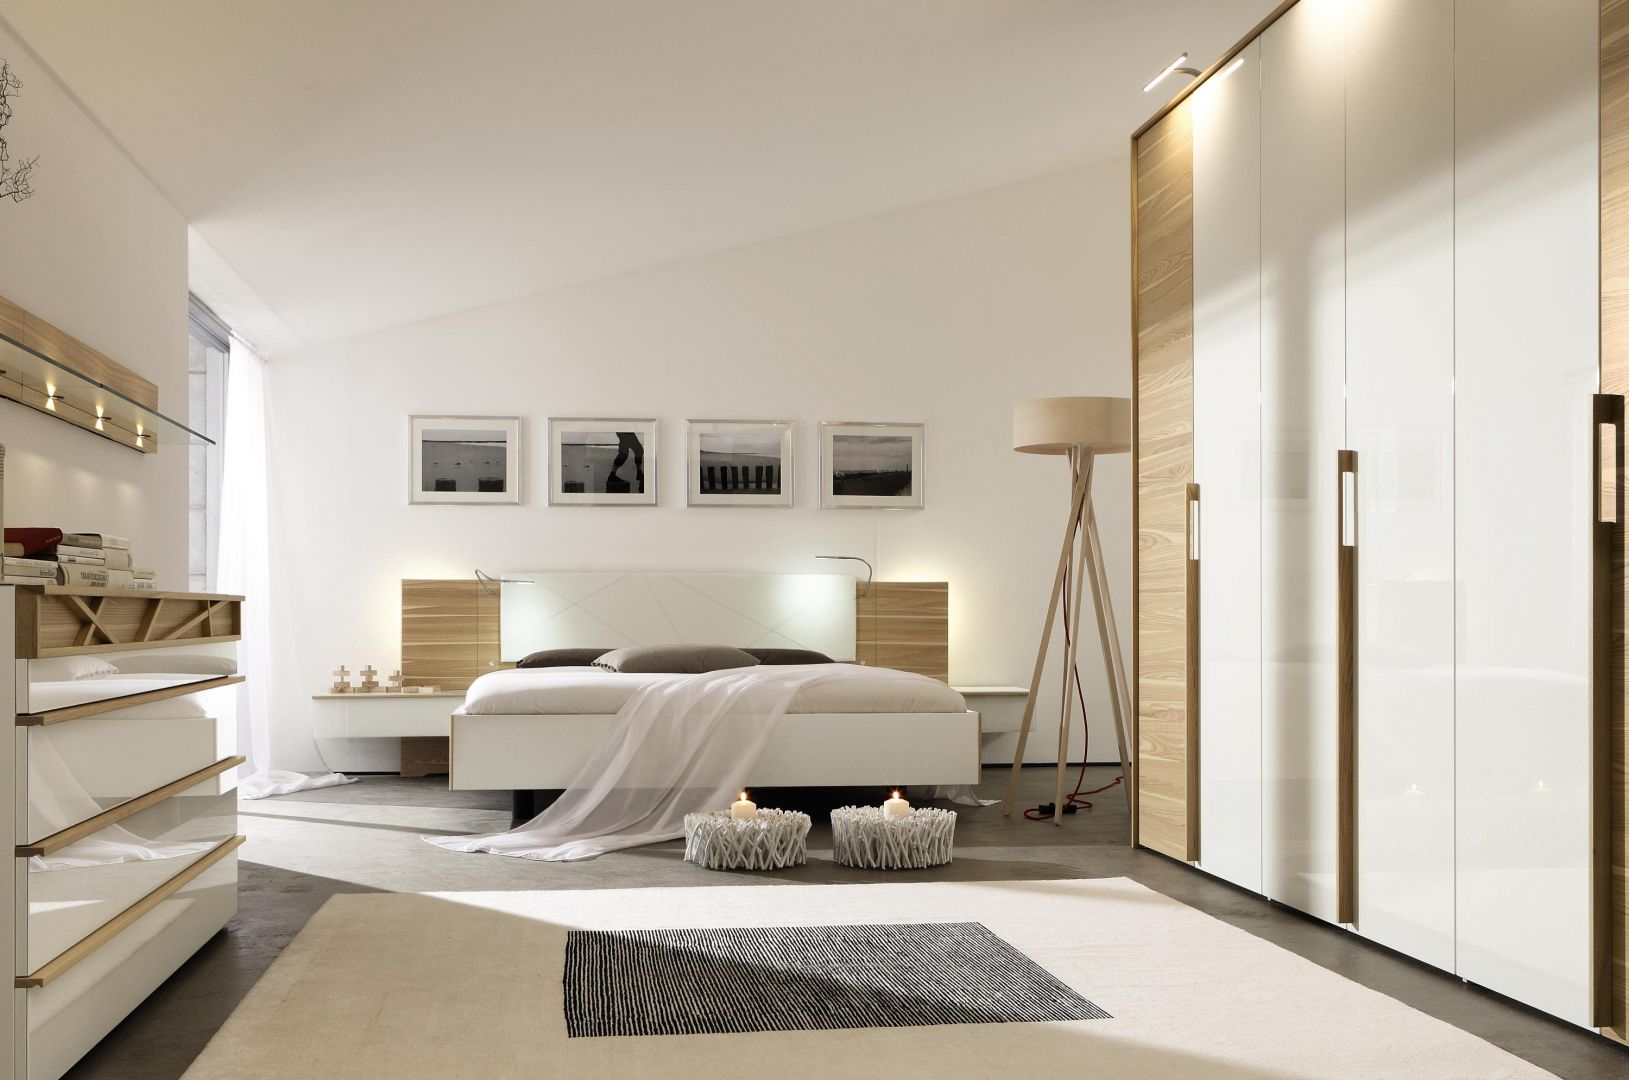 Zastosowanie bieli i drewna w sypialni spowoduje, że pomieszczenie wyda się większe niż jest w rzeczywistości. Taka kompozycja kolorystyczna pięknie prezentuje się też na drzwiach dużej szafy. Fot. Huelsta